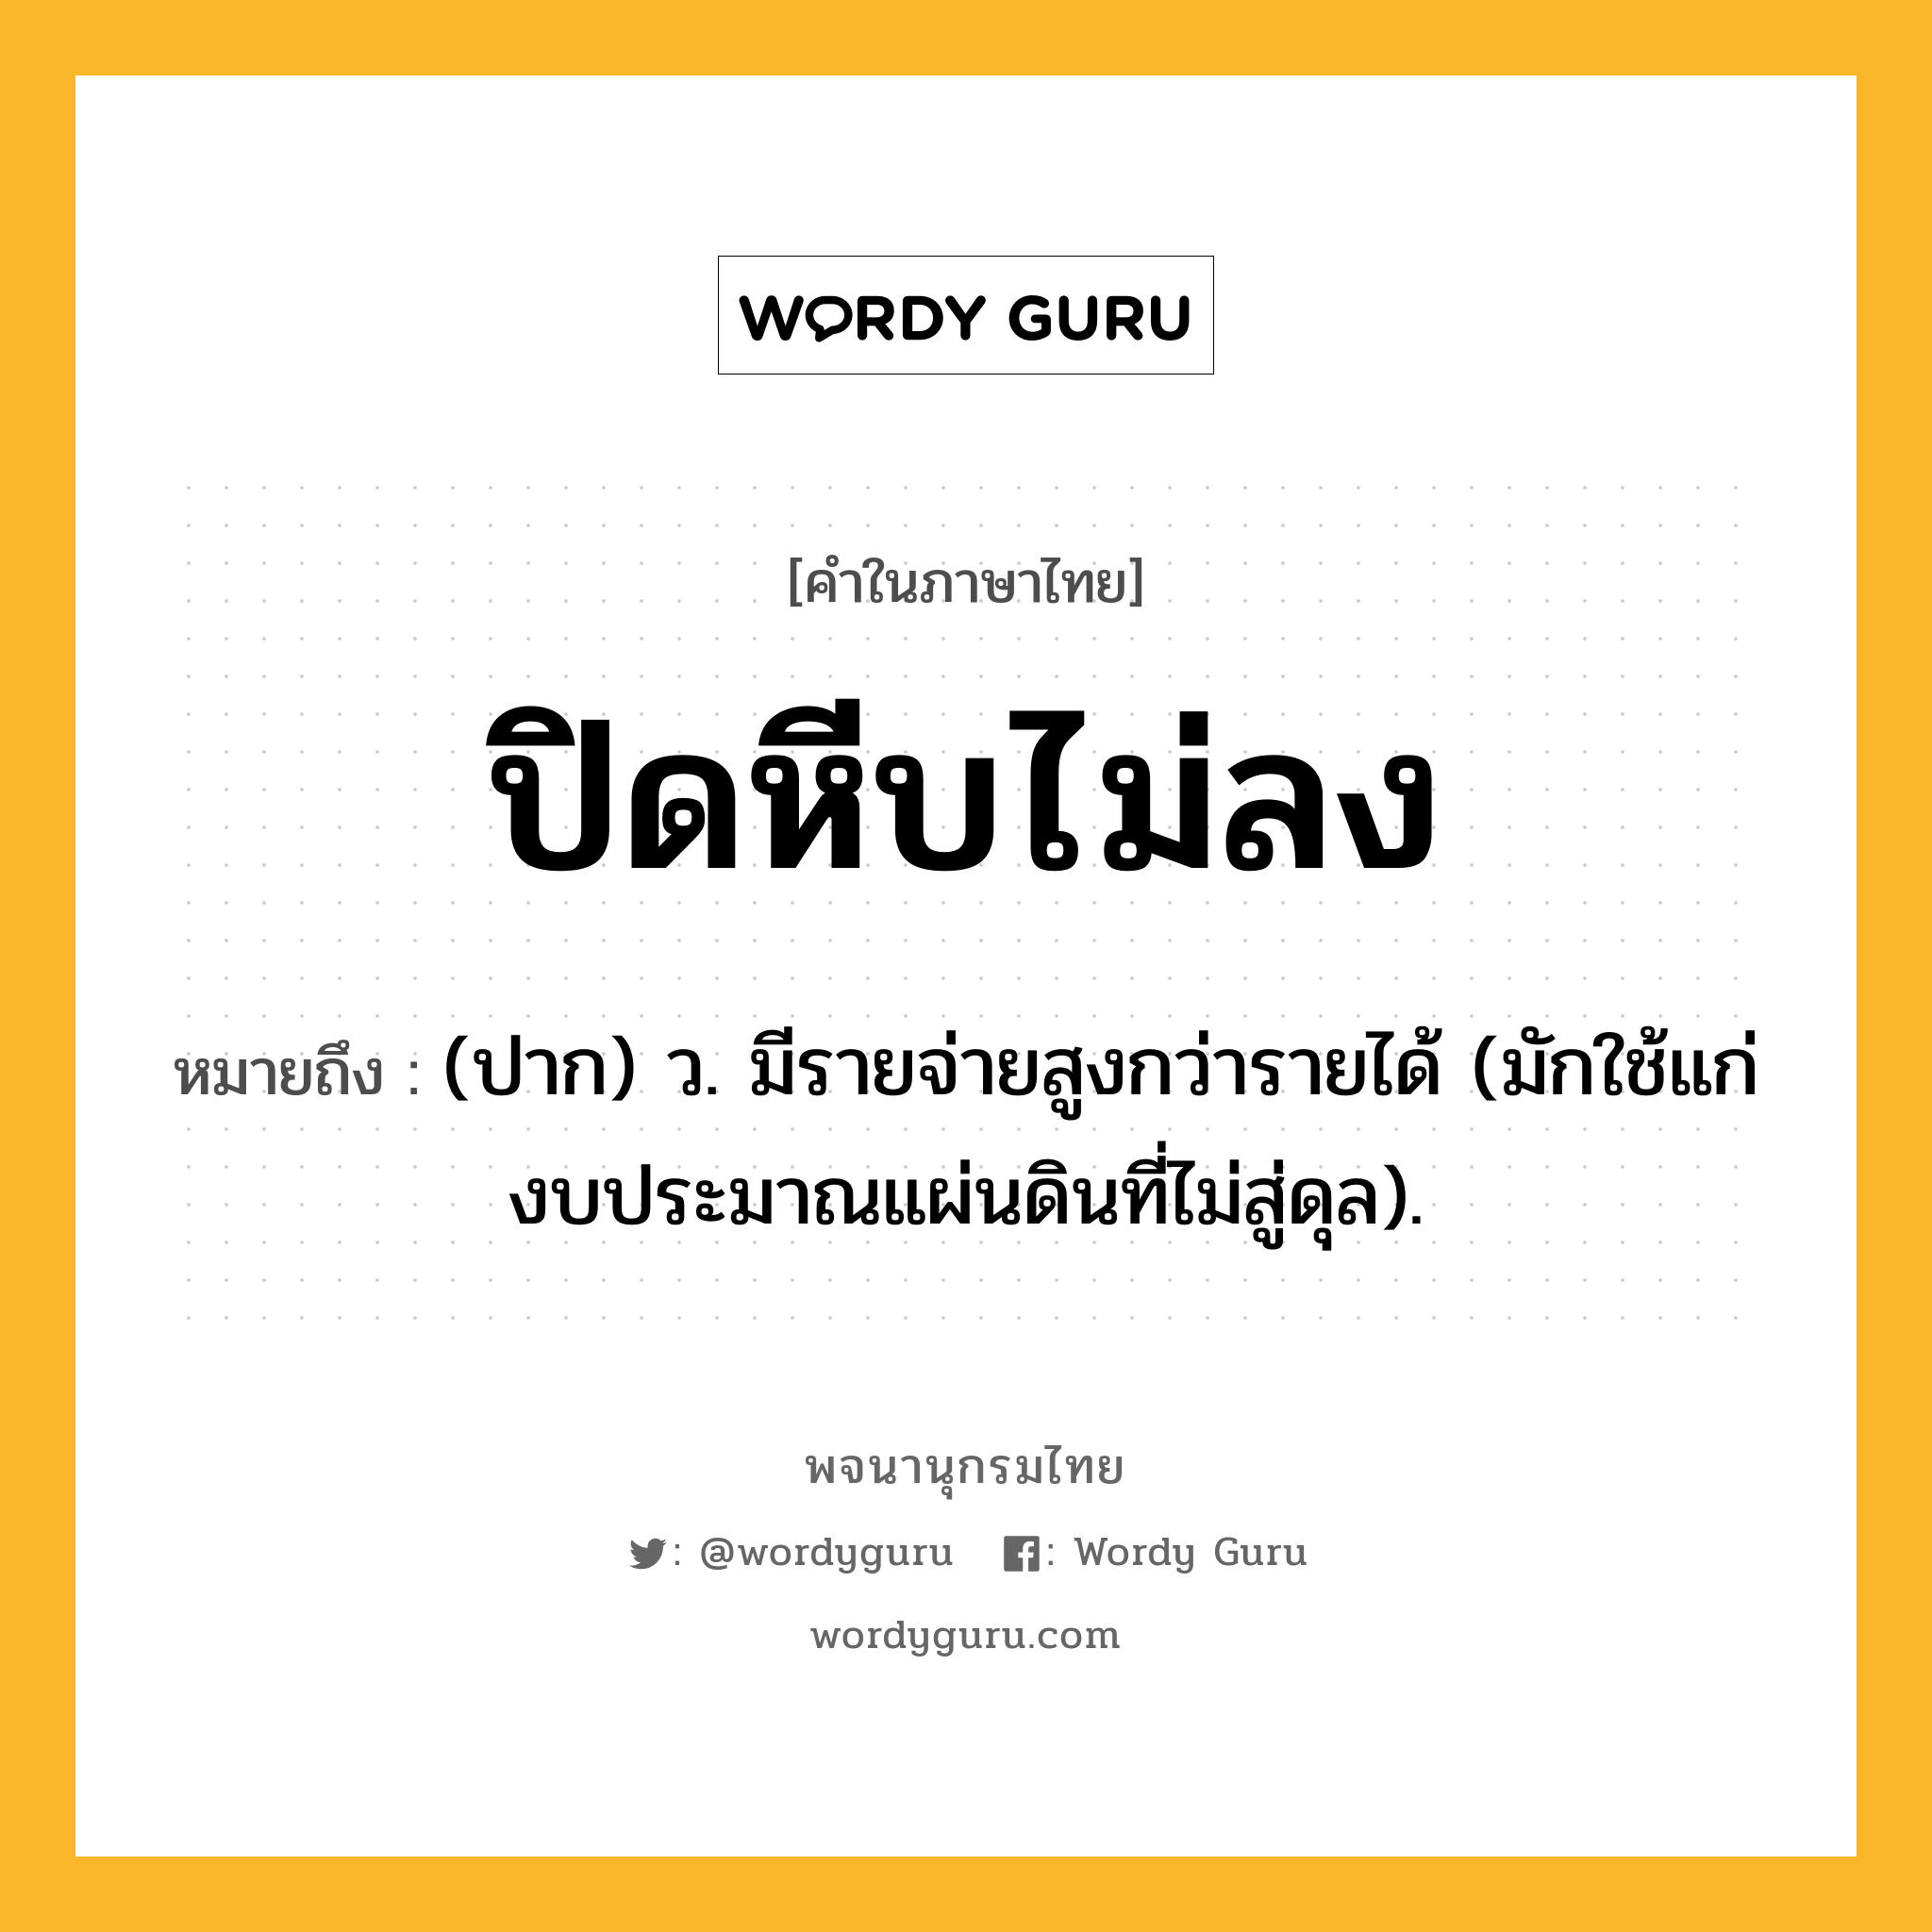 ปิดหีบไม่ลง หมายถึงอะไร?, คำในภาษาไทย ปิดหีบไม่ลง หมายถึง (ปาก) ว. มีรายจ่ายสูงกว่ารายได้ (มักใช้แก่งบประมาณแผ่นดินที่ไม่สู่ดุล).